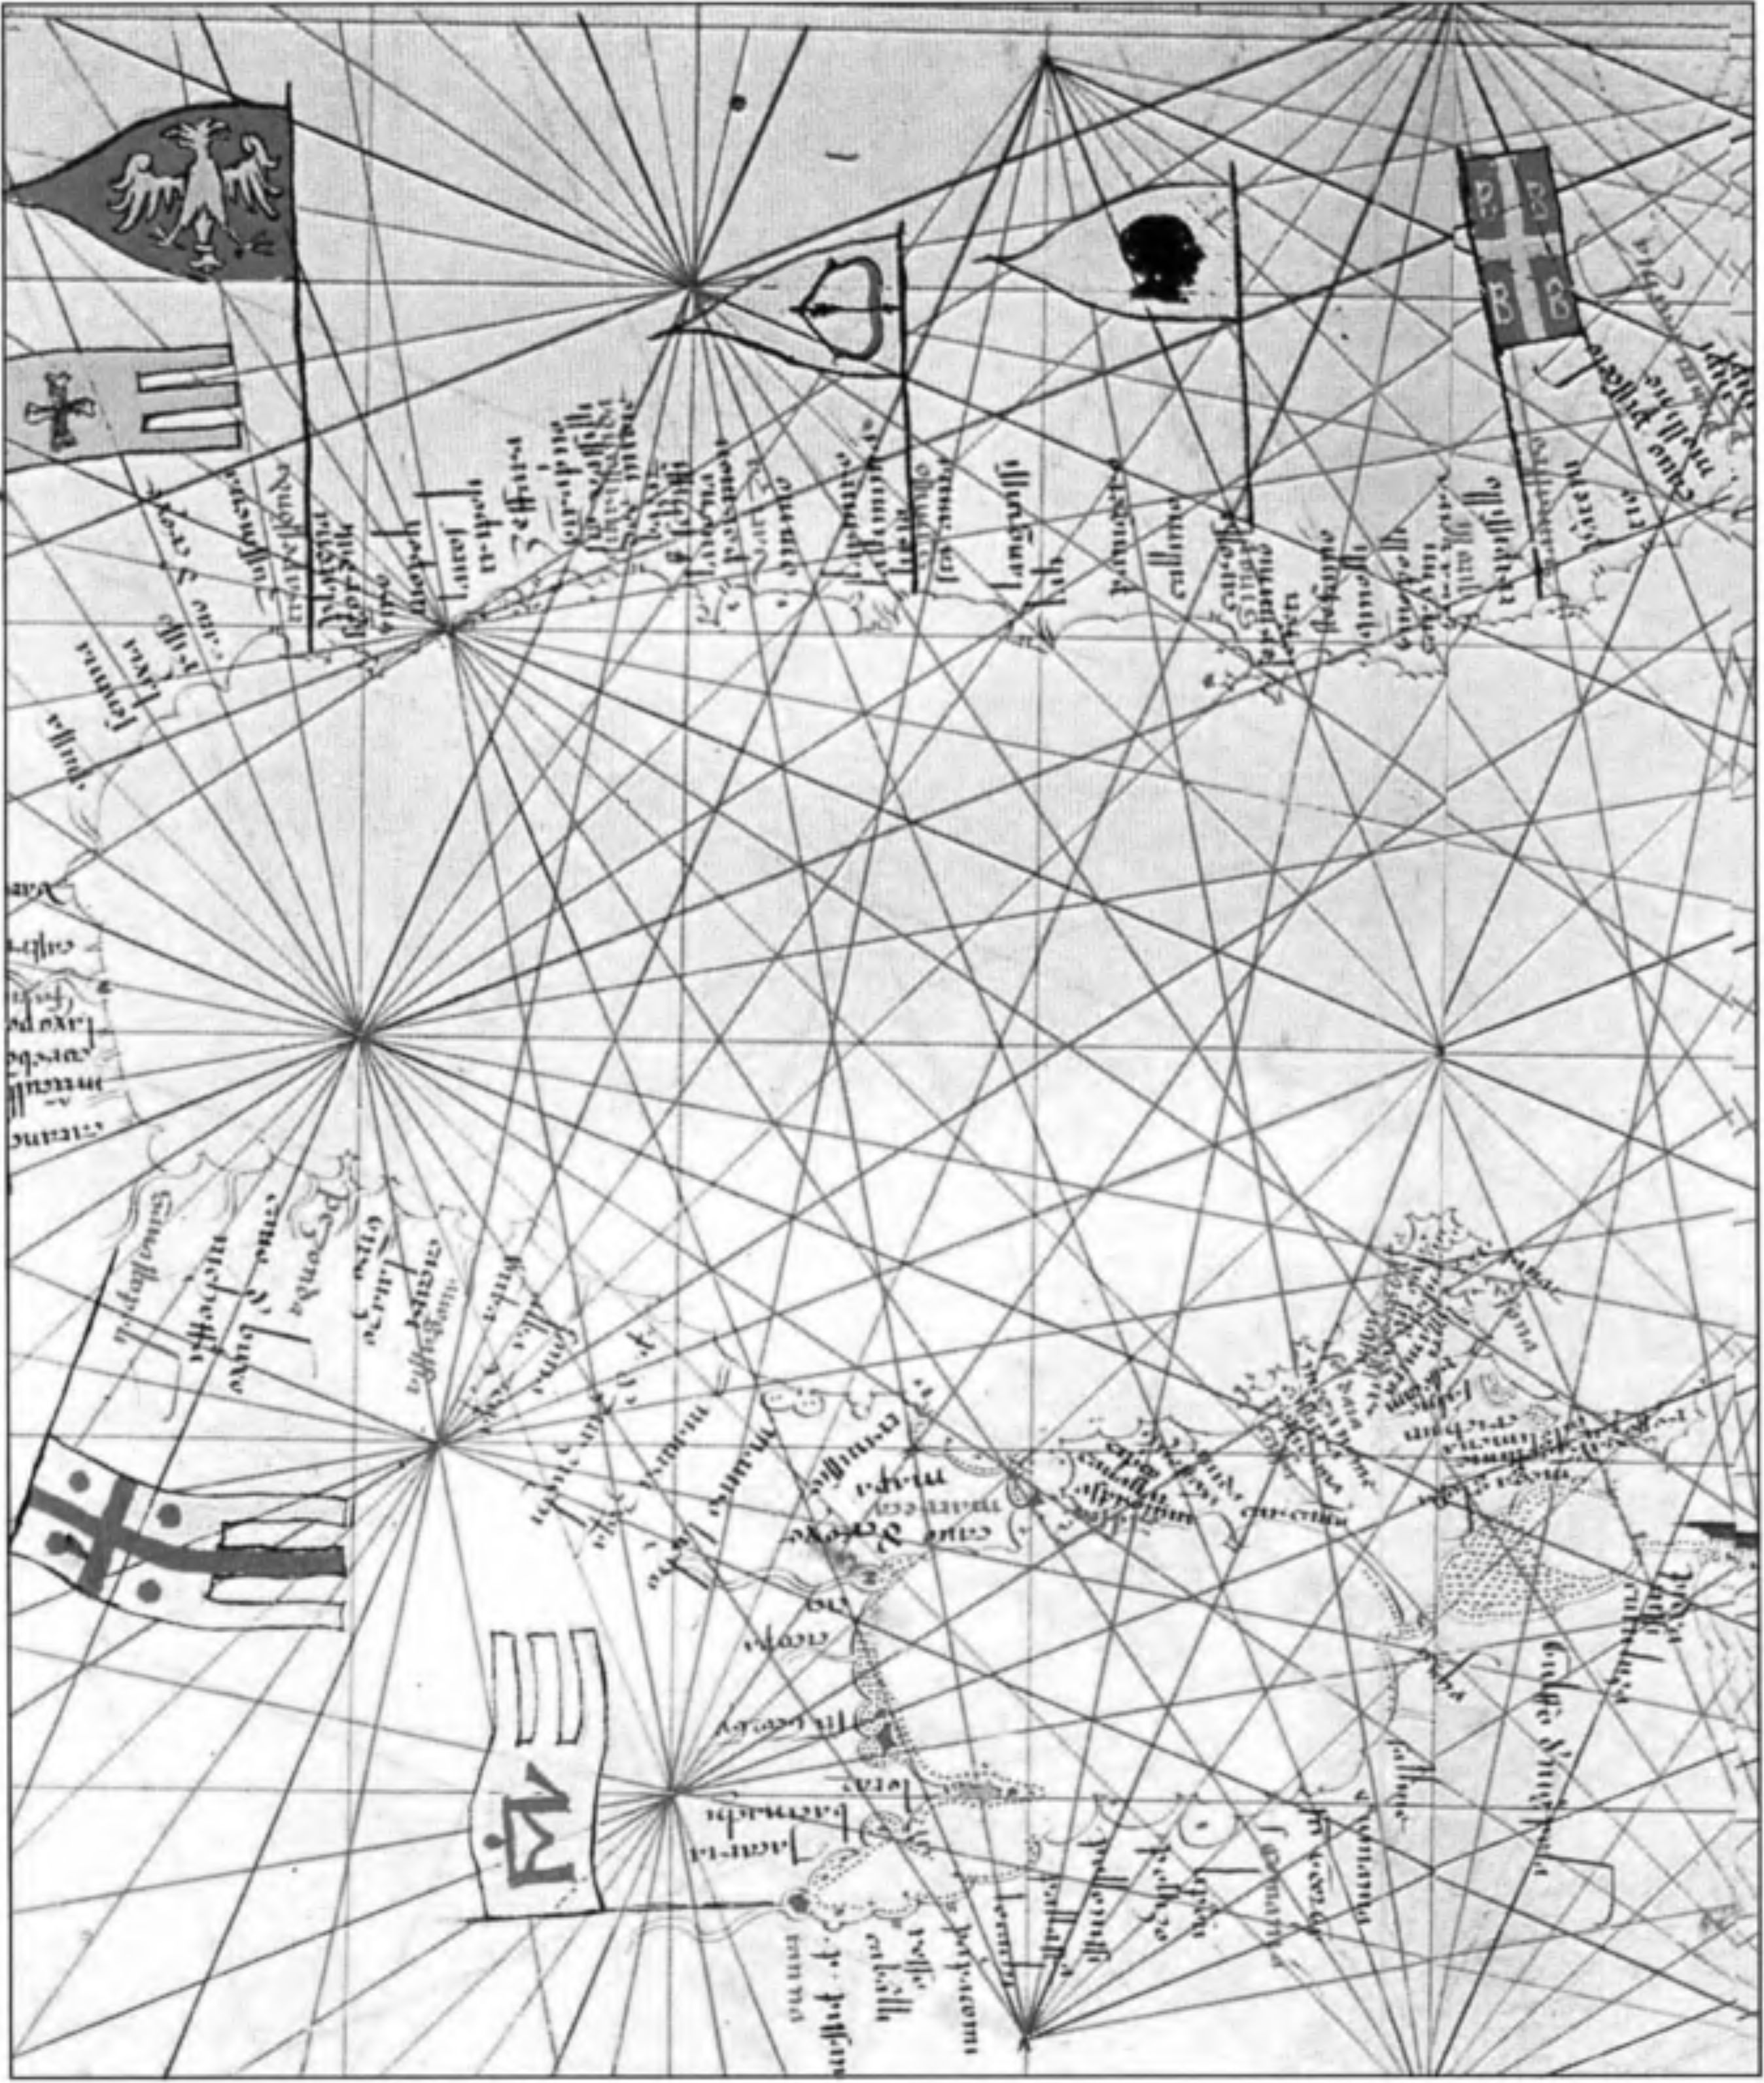 Венецианская карта-портолан 1321 г. восточной части Черного моря с Крымом. Флаги с гербами отмечают принадлежность важнейших торговых пунктов. Владения Византии (справа) отмечены крестом с четырьмя буквами «В»; Трапезунда — двуглавым орлом